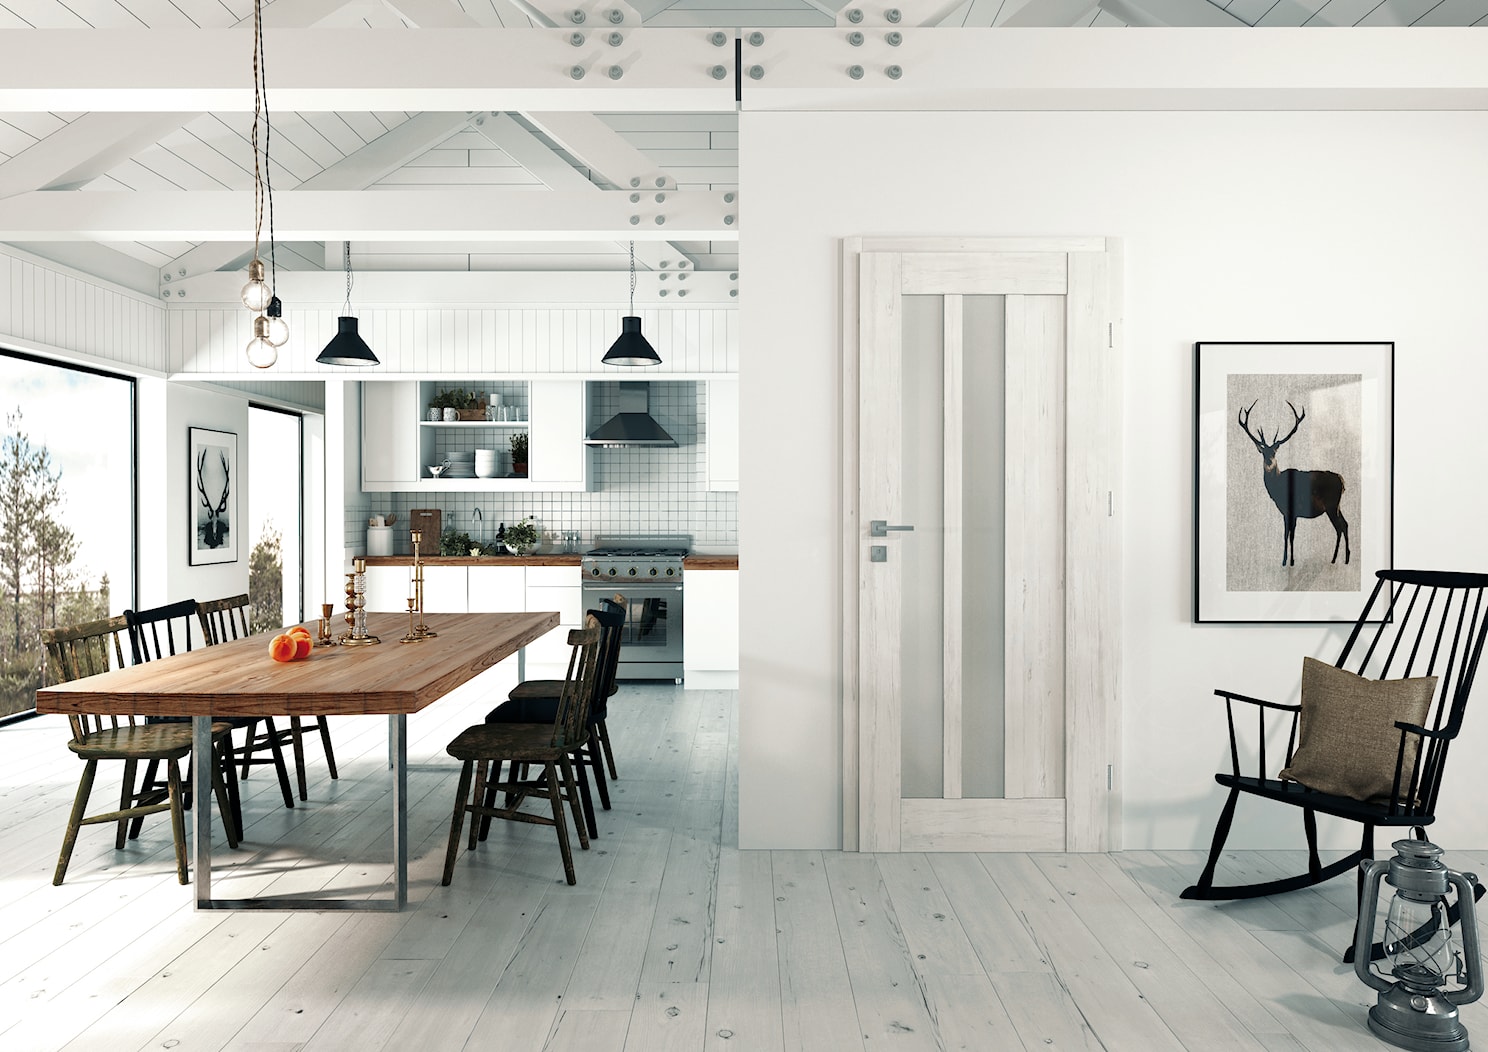 Skrzydła Drzwiowe Ramowe Przylgowe - Duża otwarta z salonem biała z lodówką wolnostojącą kuchnia jednorzędowa z oknem, styl minimalistyczny - zdjęcie od VOSTER - Homebook